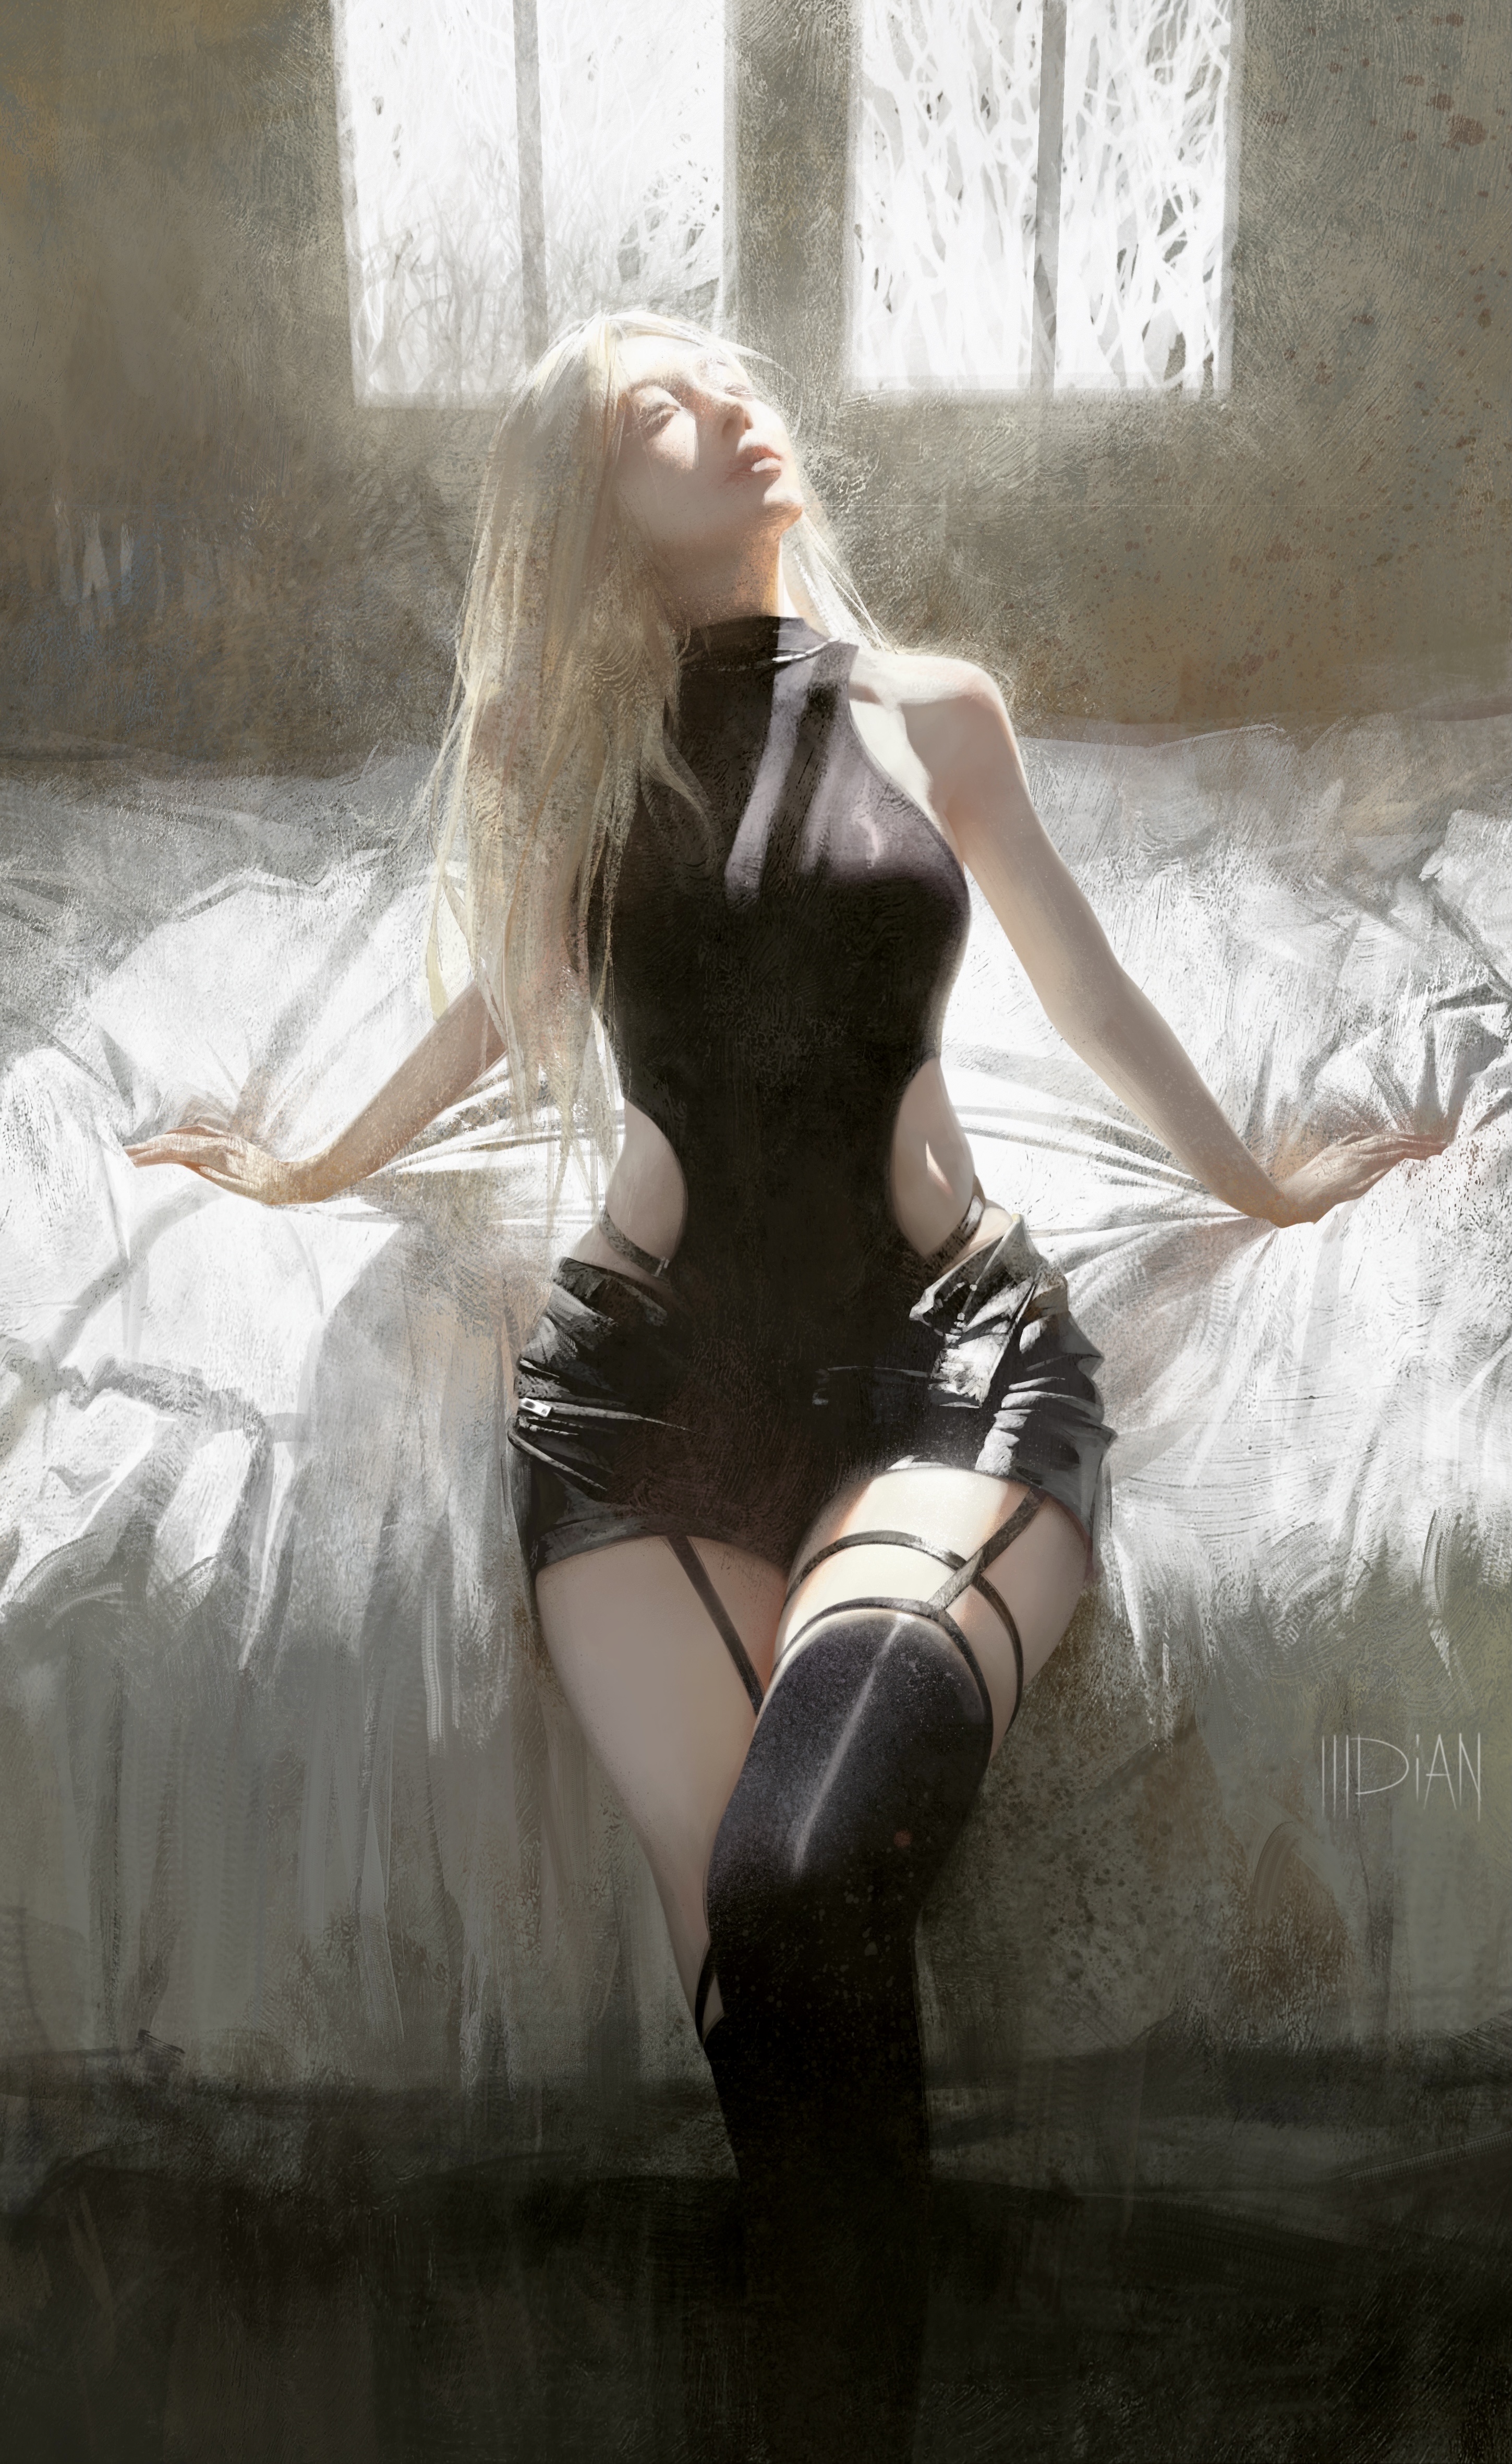 ILLDiAN Digital Art Artwork Illustration Women Blonde Room Bed Sunlight Signature 2899x4724